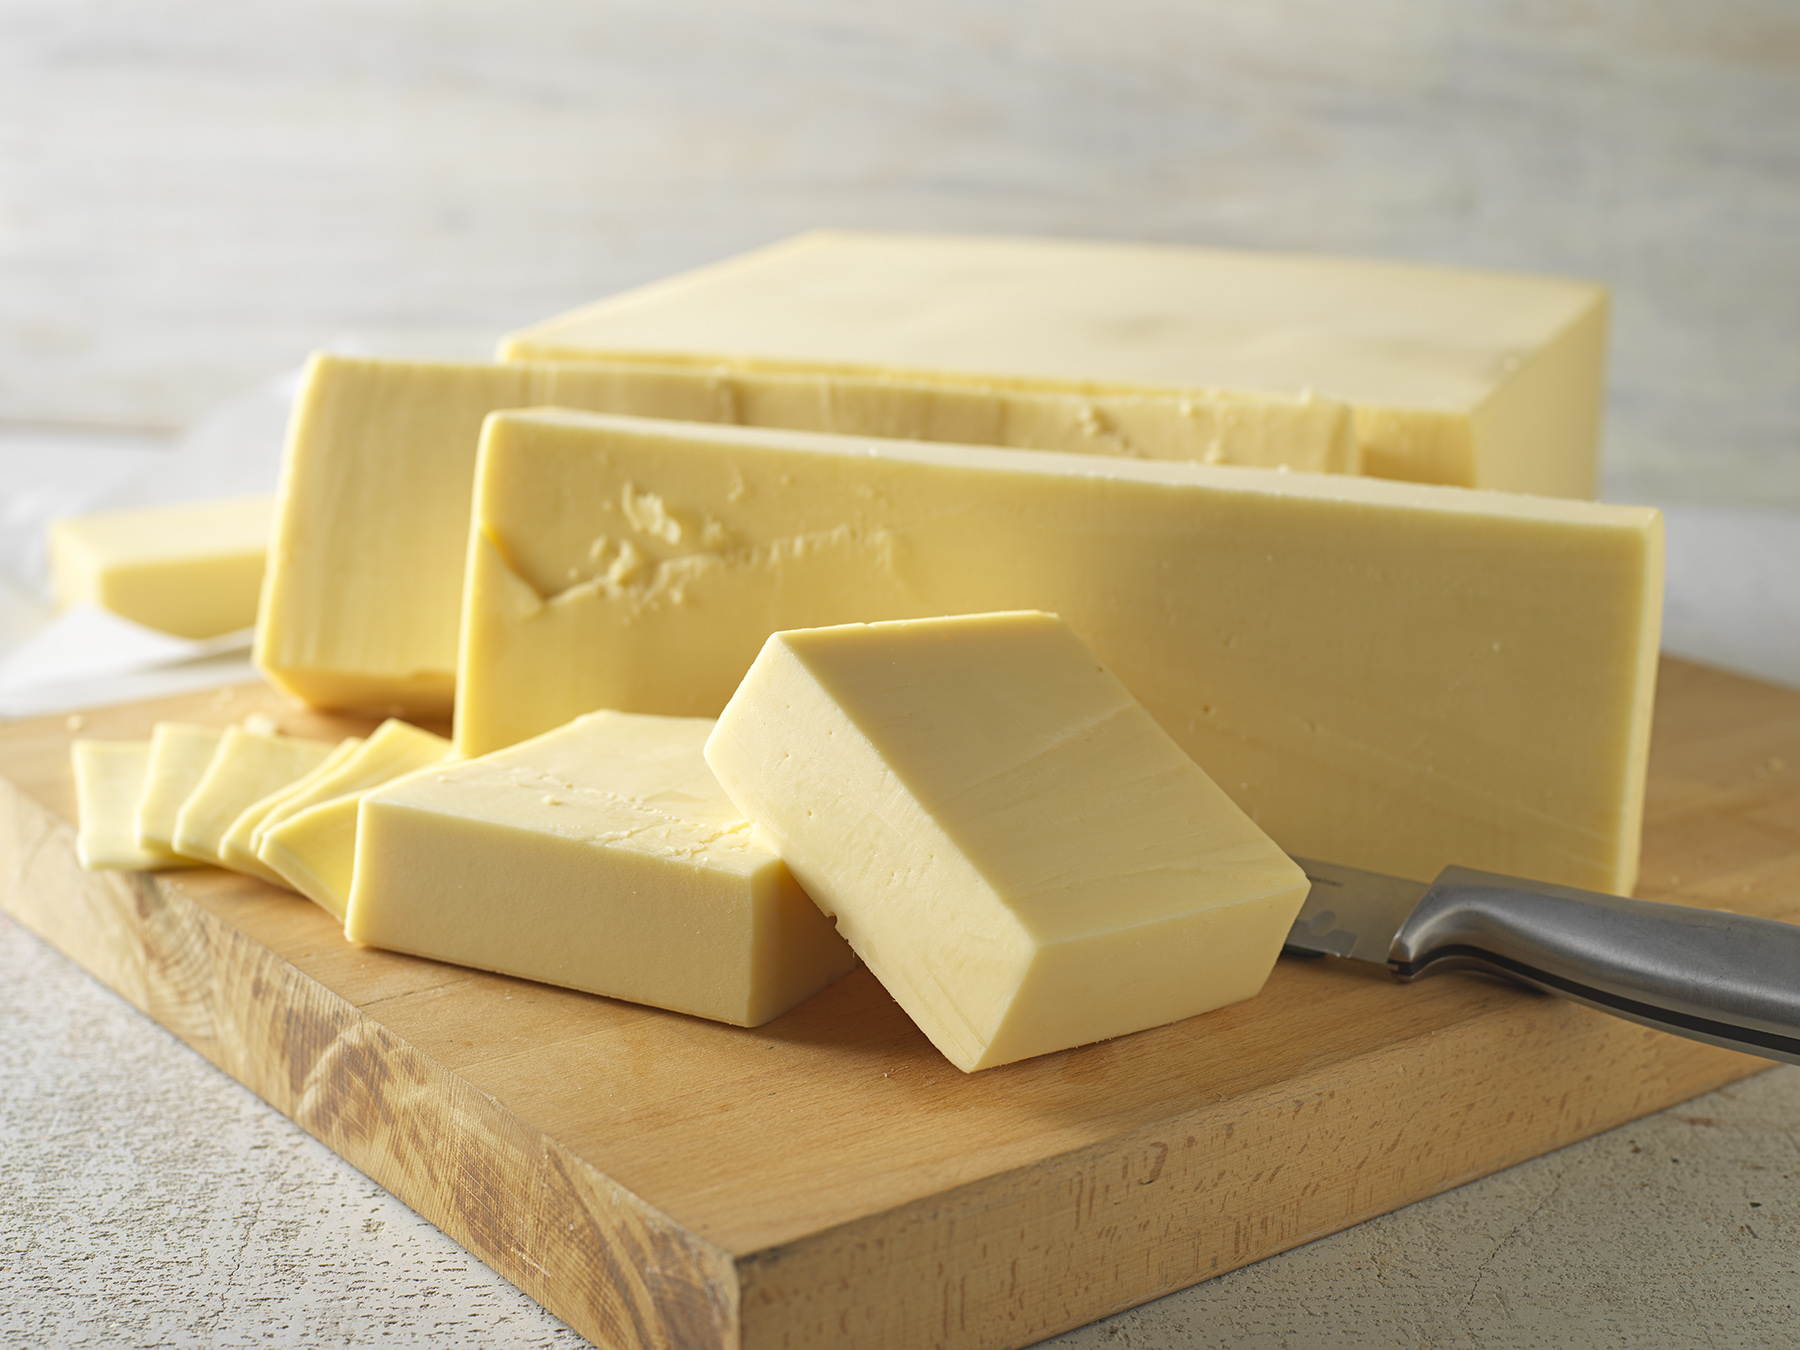 Mozzarella block cheese produced by Gilman Cheese, Gilman WI